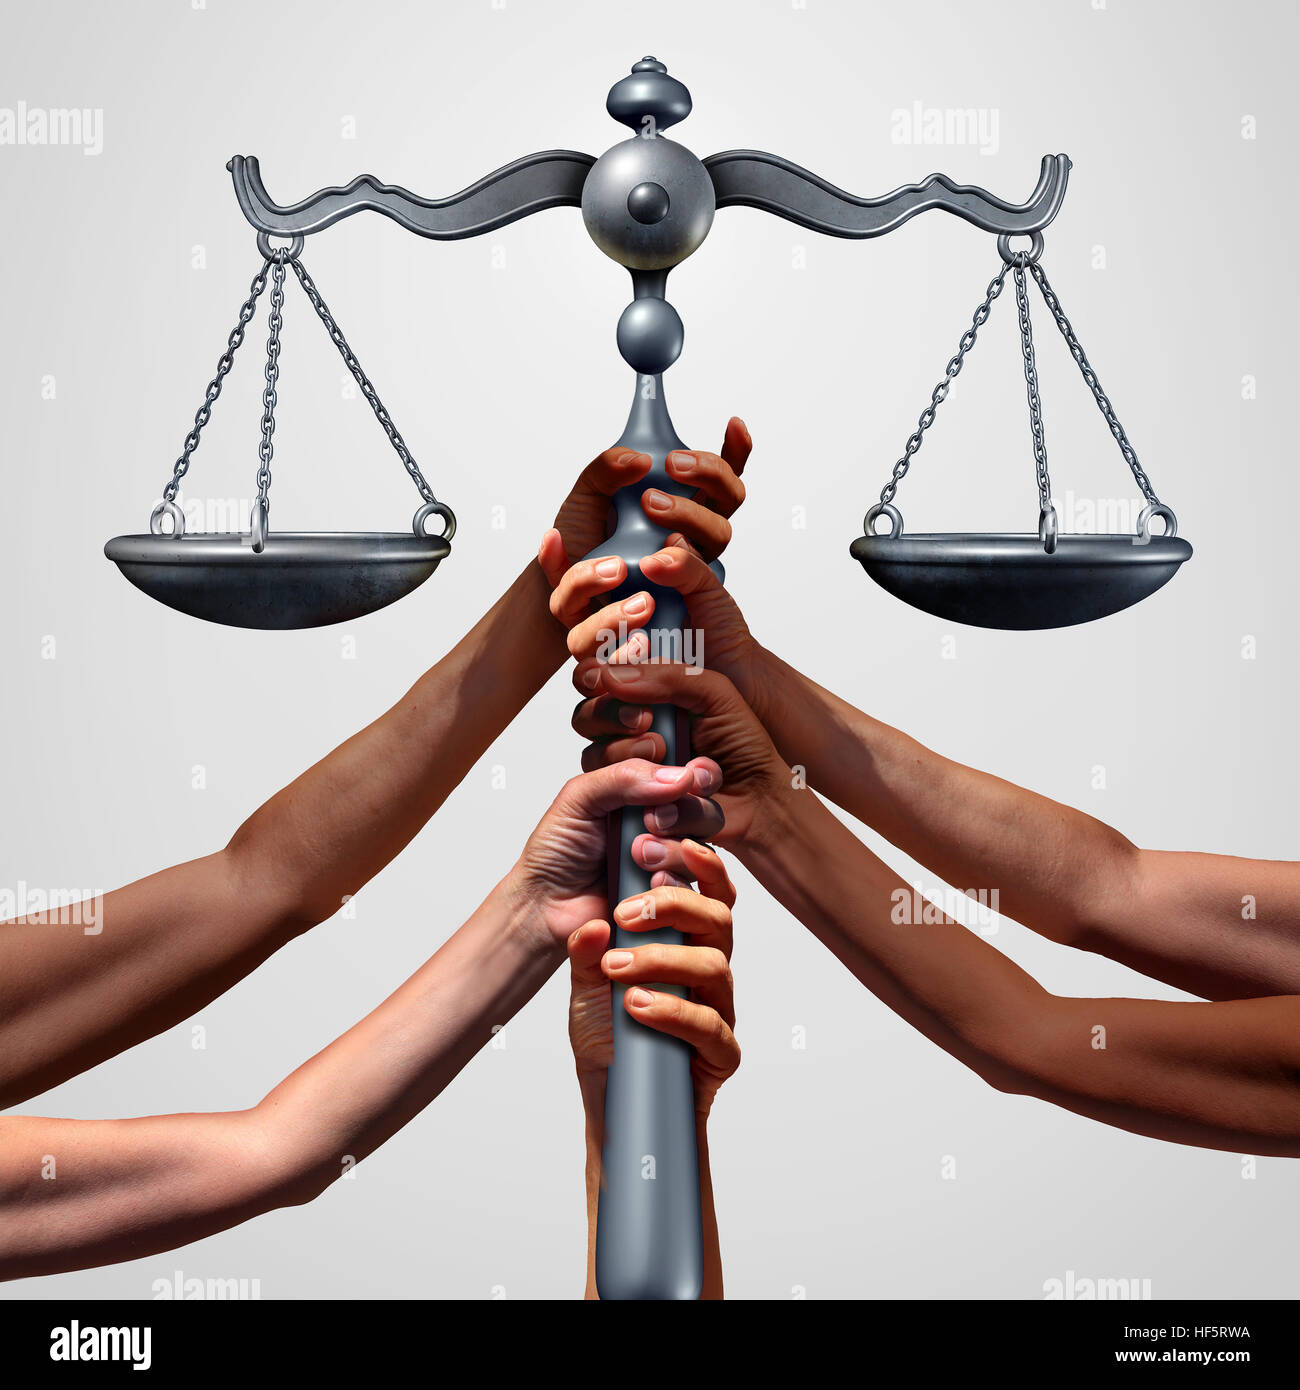 Le concept de justice sociale ou d'action collective comme un groupe de personnes de divers groupes ethniques mains tenant un court law échelle comme une métaphore pour l'équité mondiale et Banque D'Images